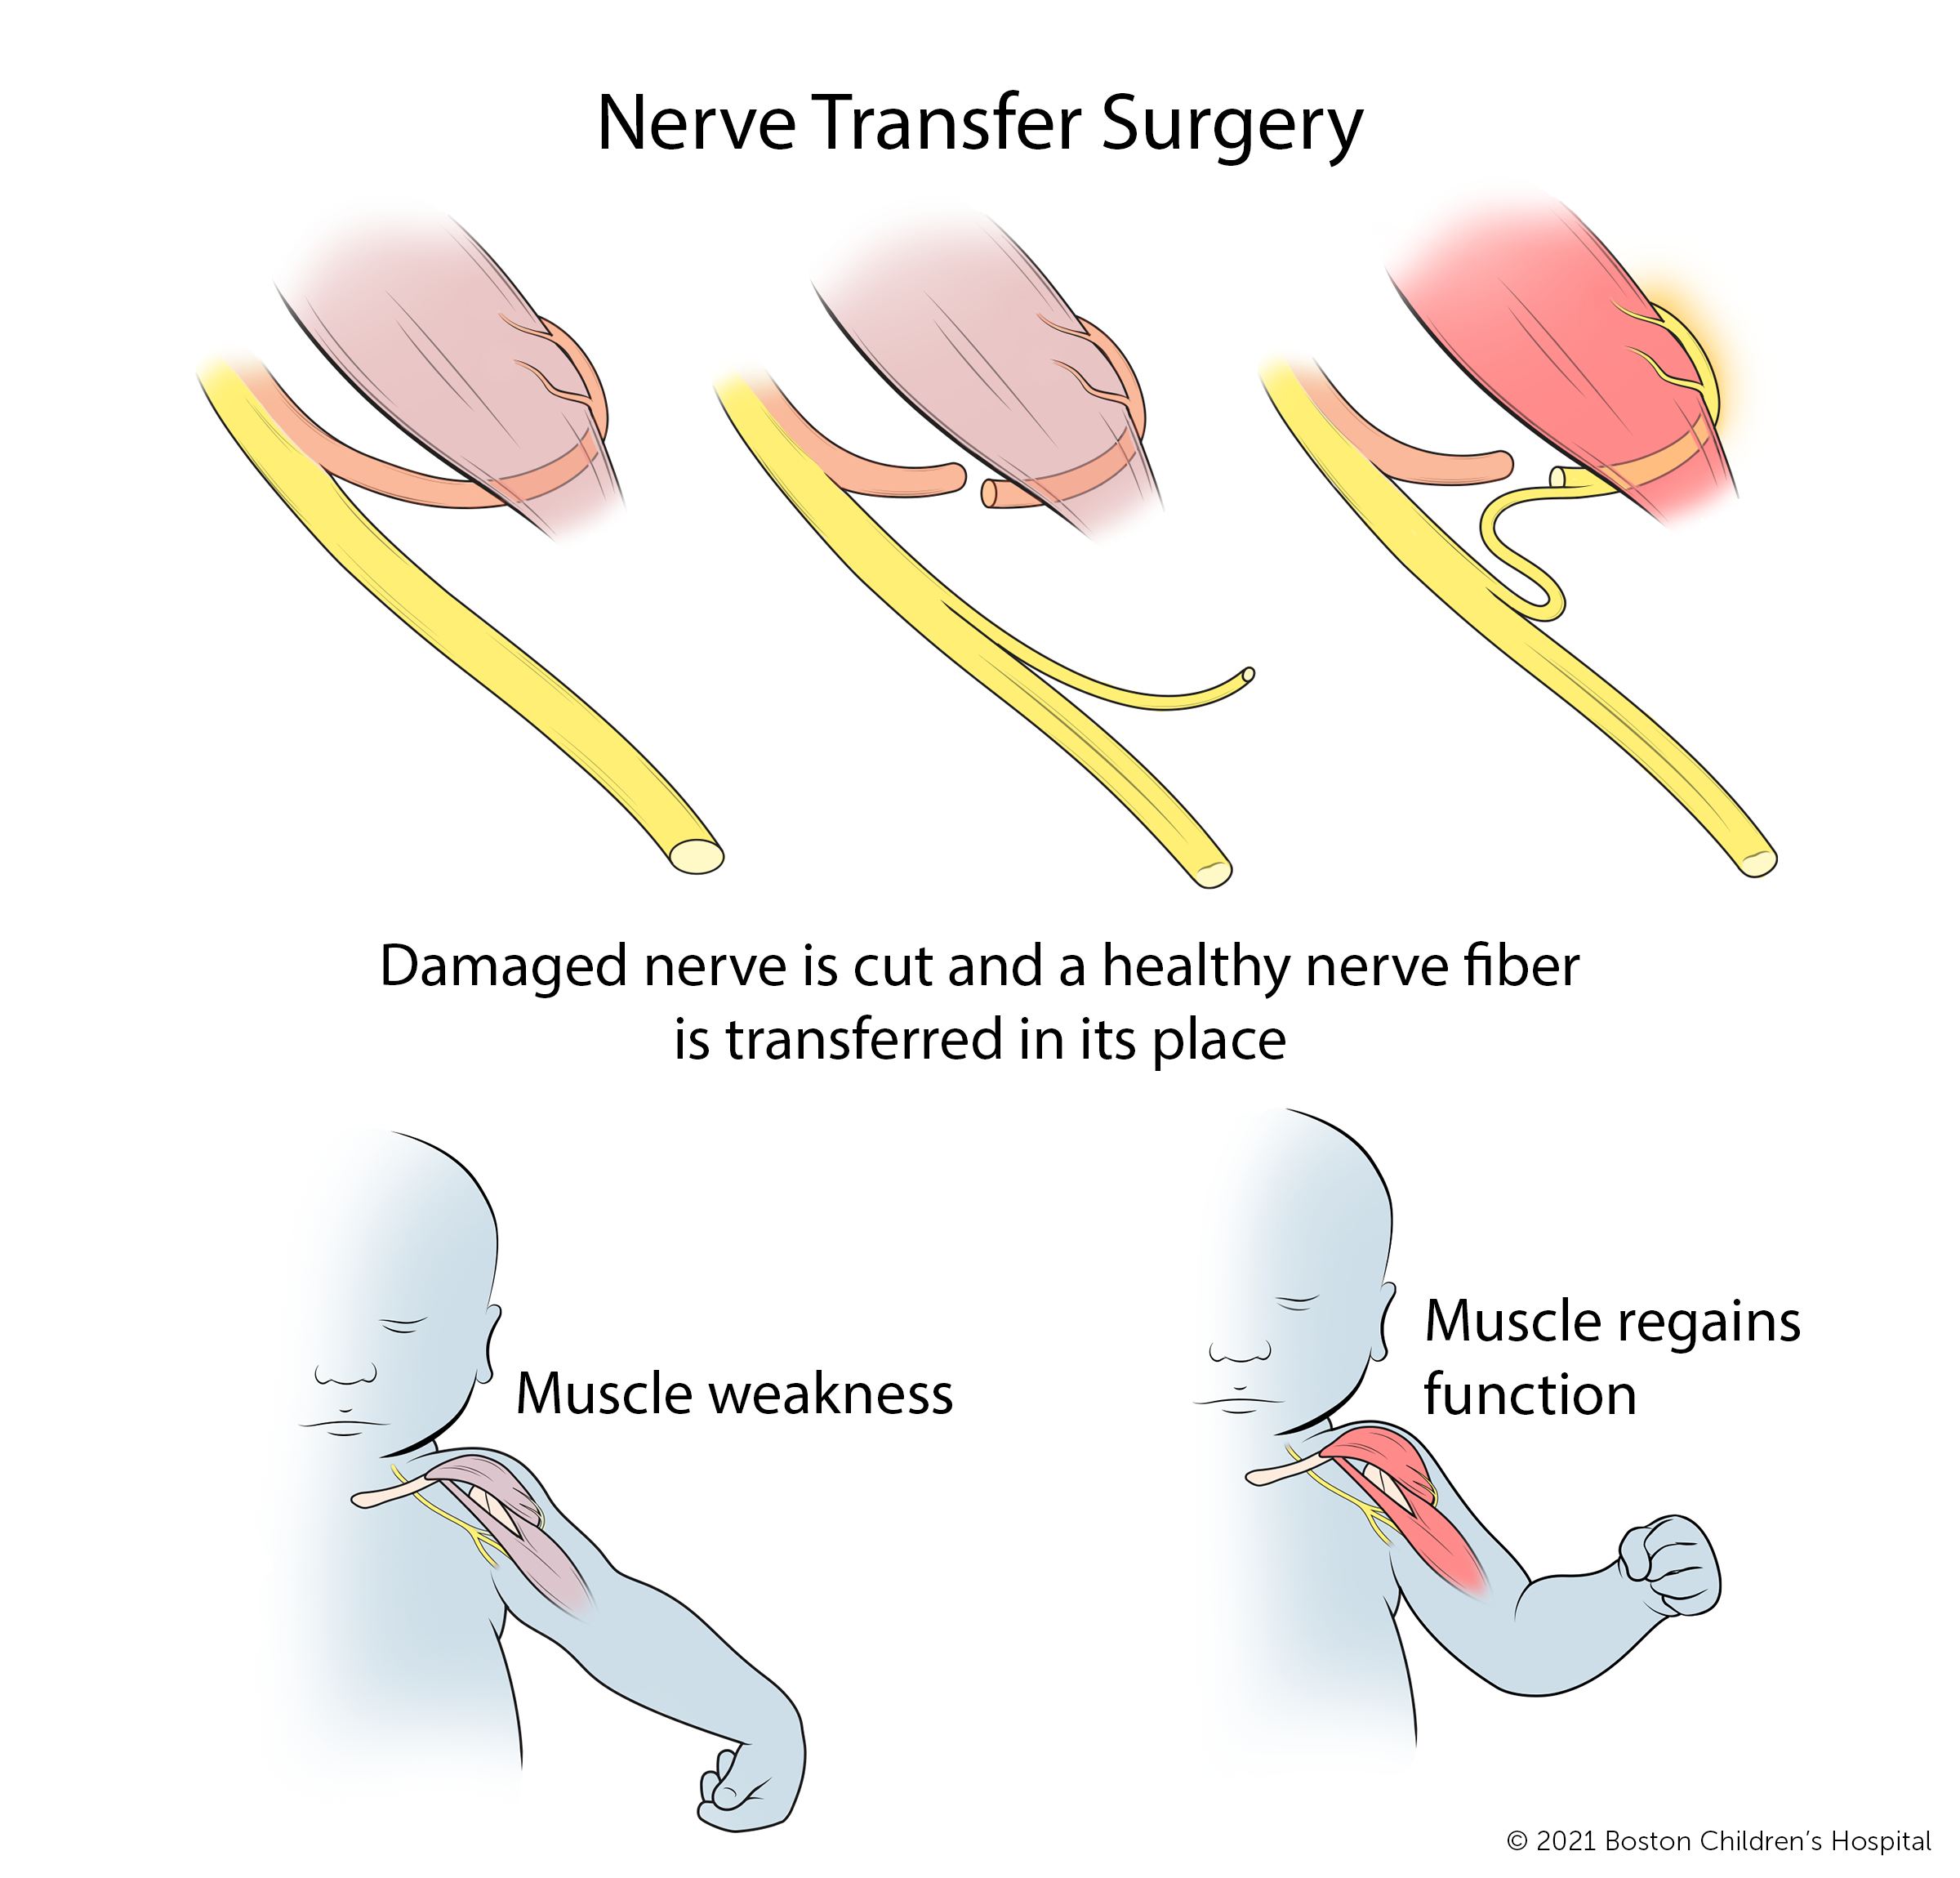 在神经转移手术中，损伤的神经被切断，健康的神经纤维被转移到它的位置。随着时间的推移，肌肉无力区域恢复功能。